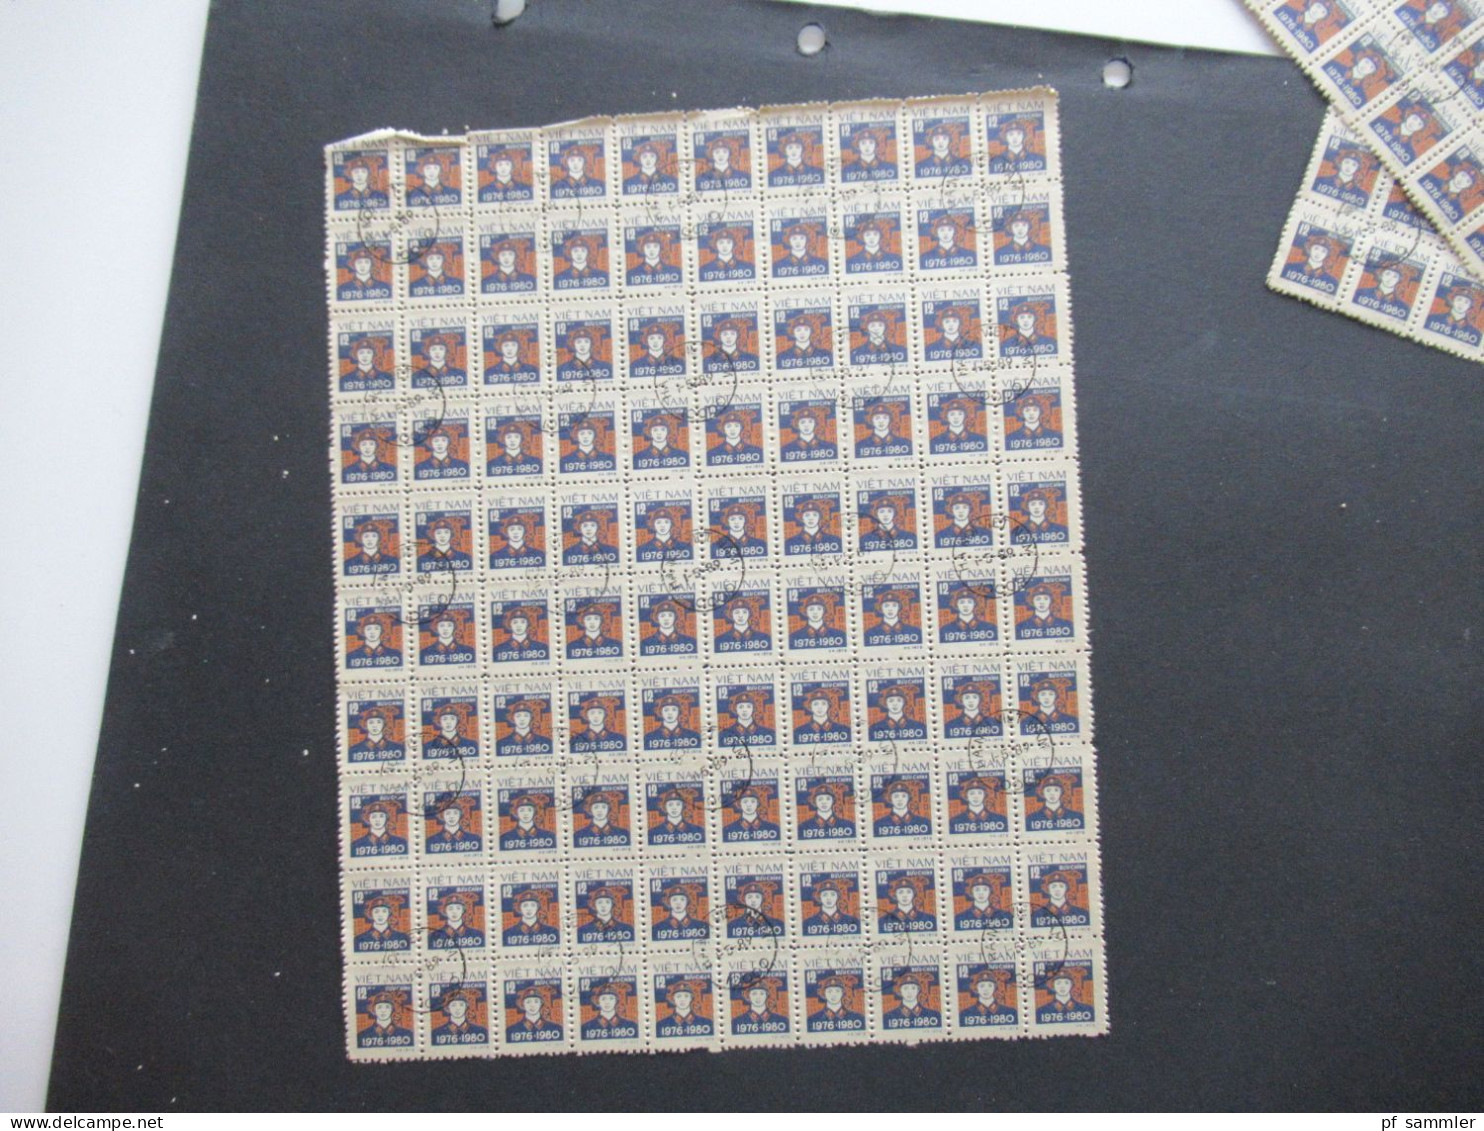 Asien Vietnam 1978 / 1980 Freimarken Motiv Soldat Buu Chinh 100er Bogenteile / Bogen (11 Stück) mit Stempel Hanoi